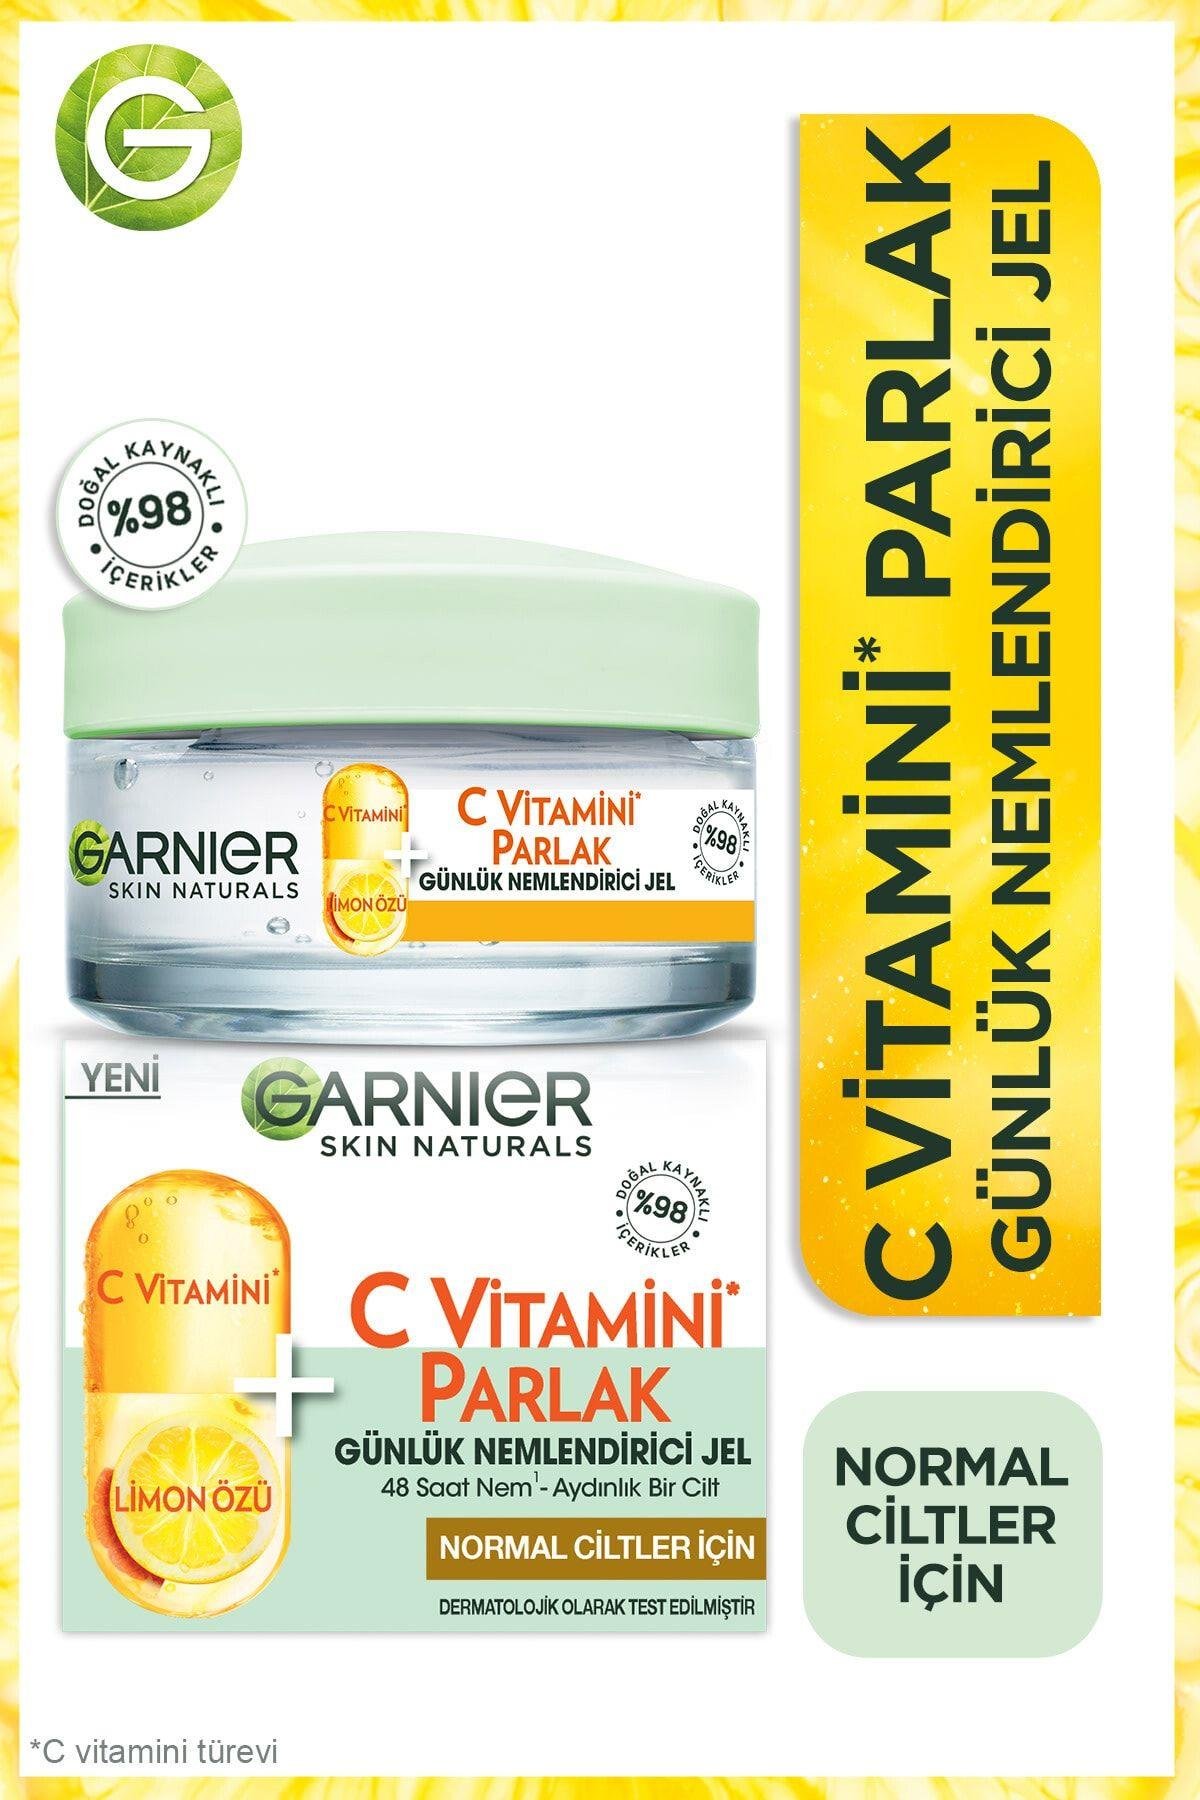 GARNIER C Vitamini Parlak Günlük Nemlendirici Jel Krem 50 ml